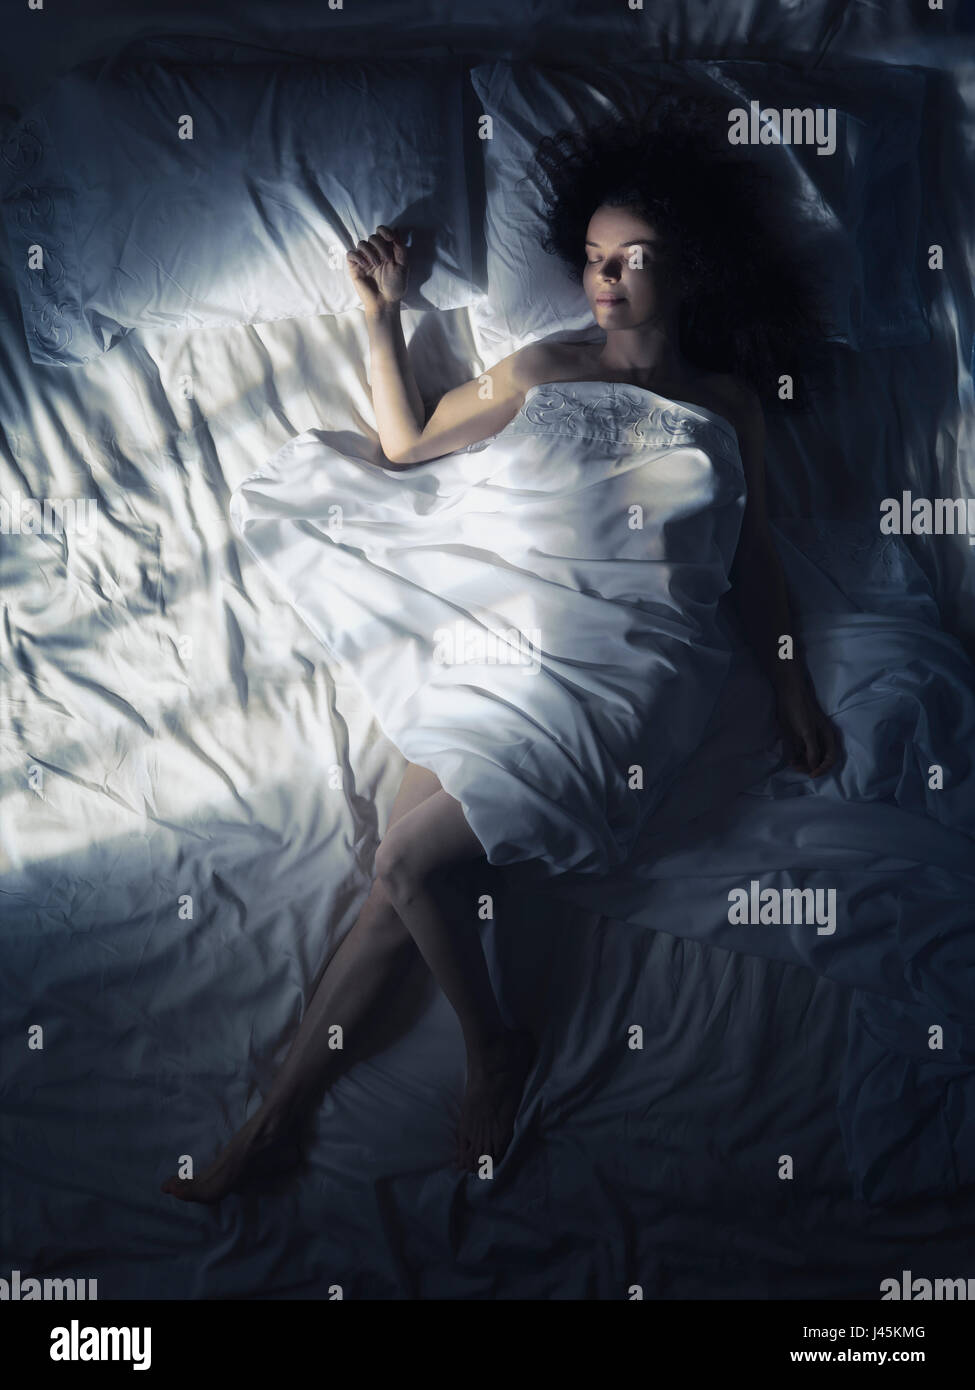 Licencia e impresiones en MaximImages.com - Foto artística de una mujer joven durmiendo sola en la cama por la noche en un dormitorio oscuro iluminado por la luz de la luna Foto de stock